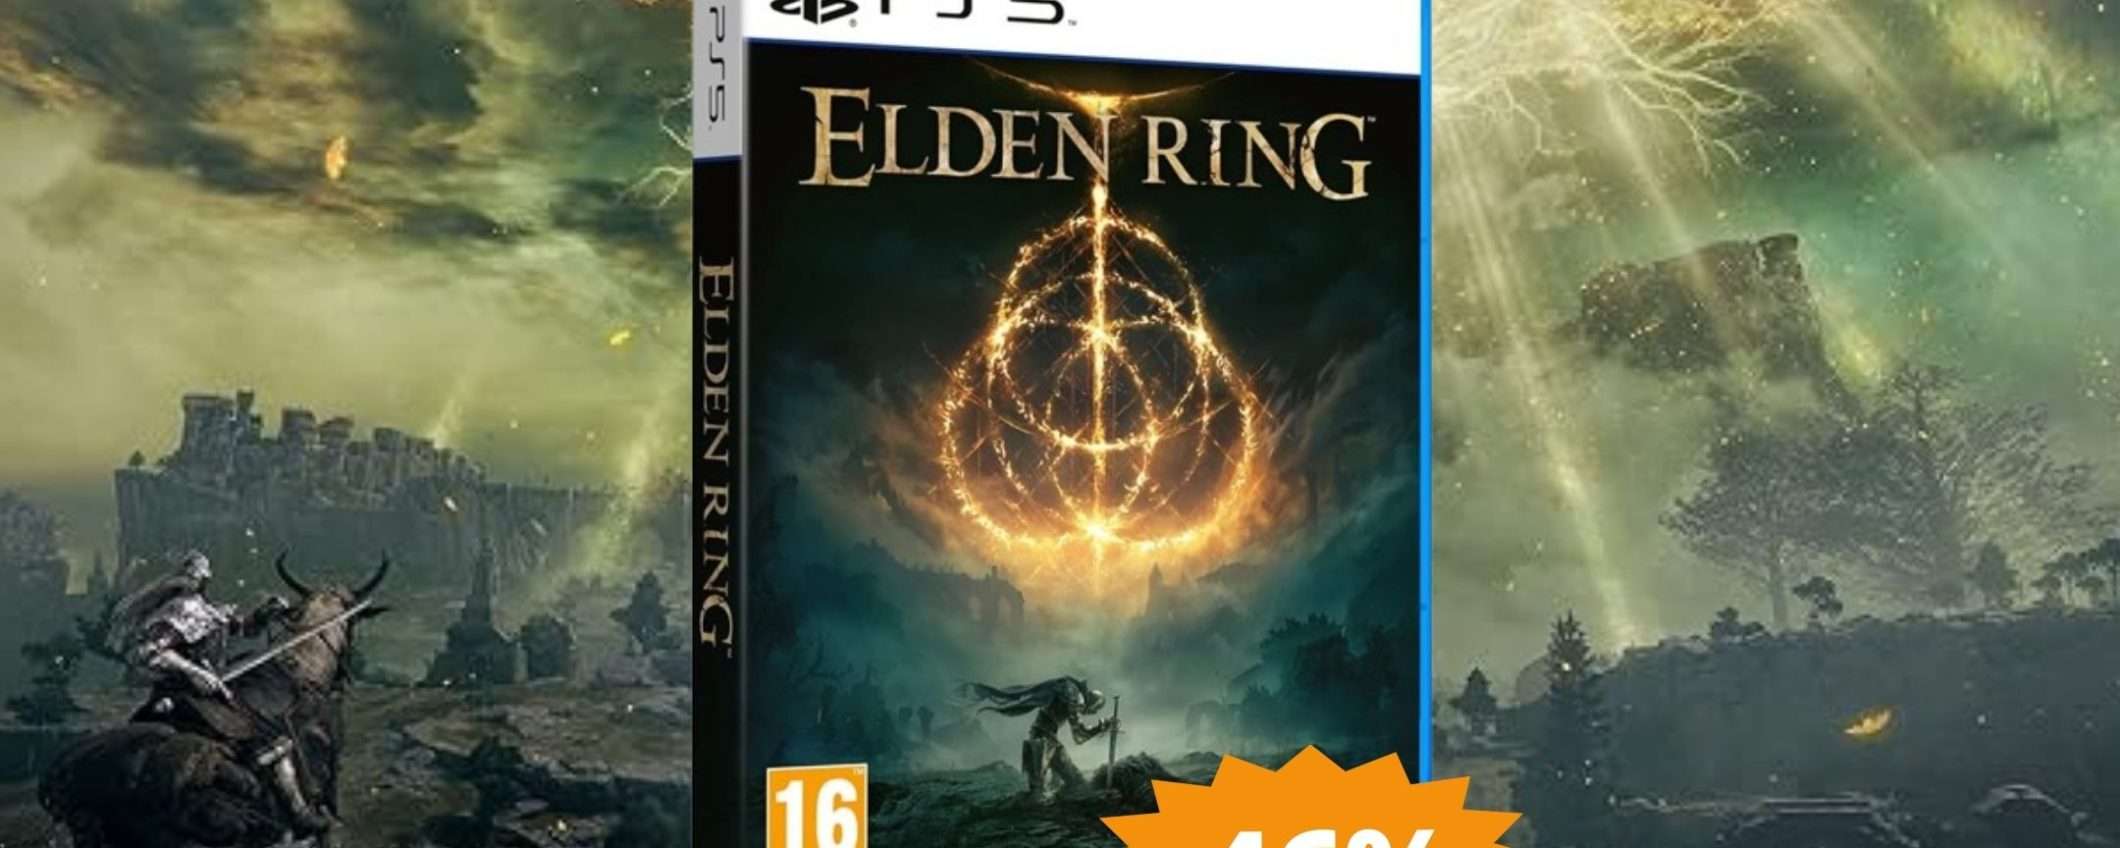 Elden Ring per PS5: sconto PAZZESCO del 46% su Amazon